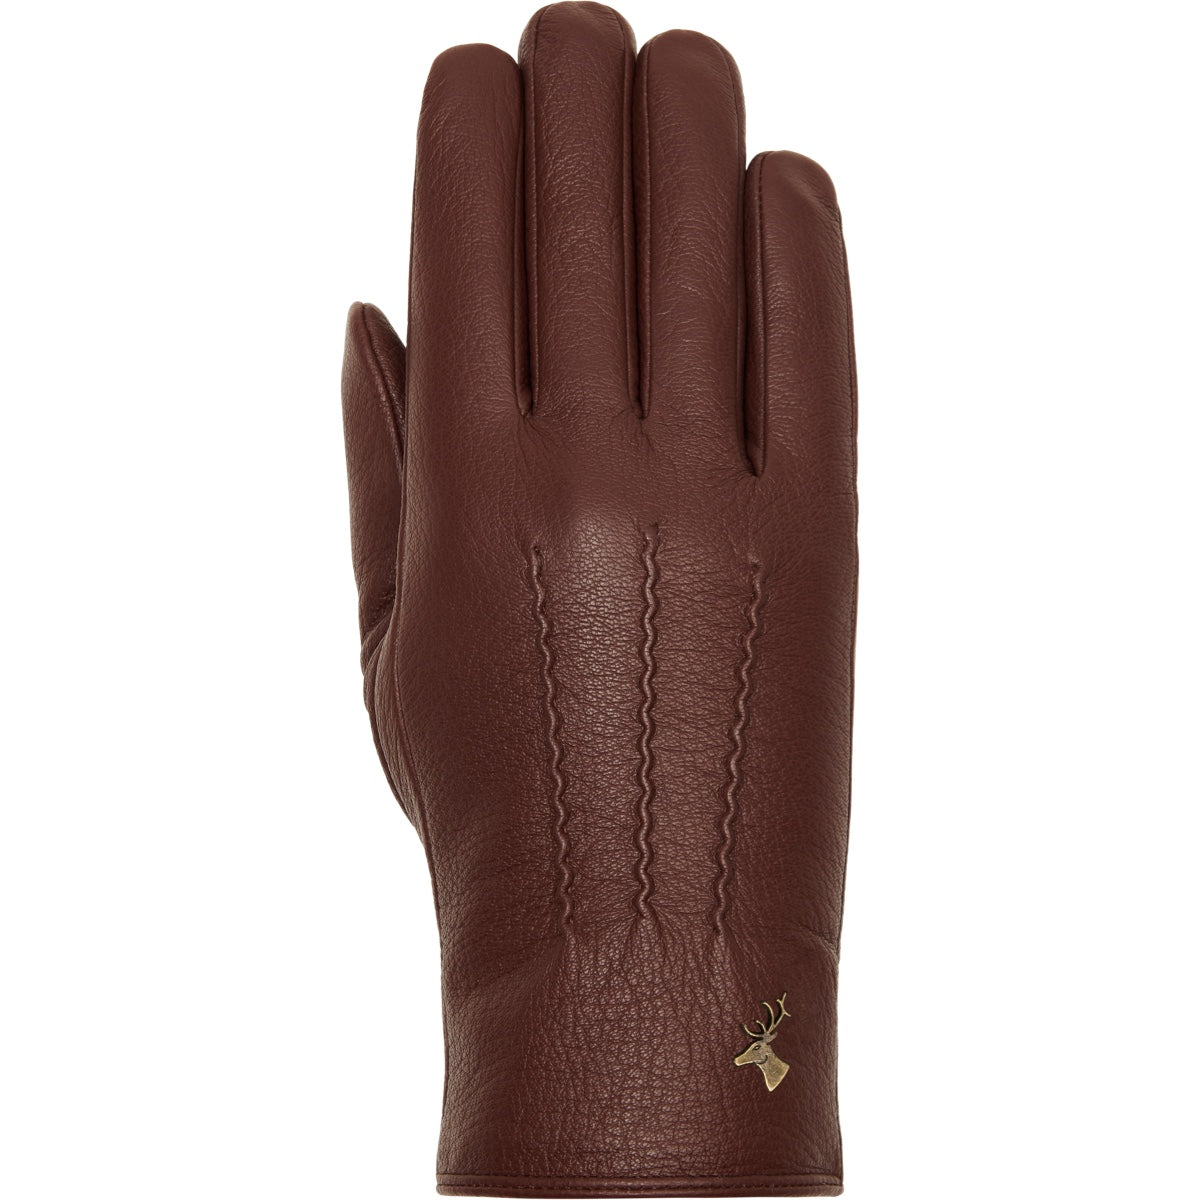 Brown Leather Gloves Women Josie - Schwartz & von Halen® - Premium Leather Gloves - 1